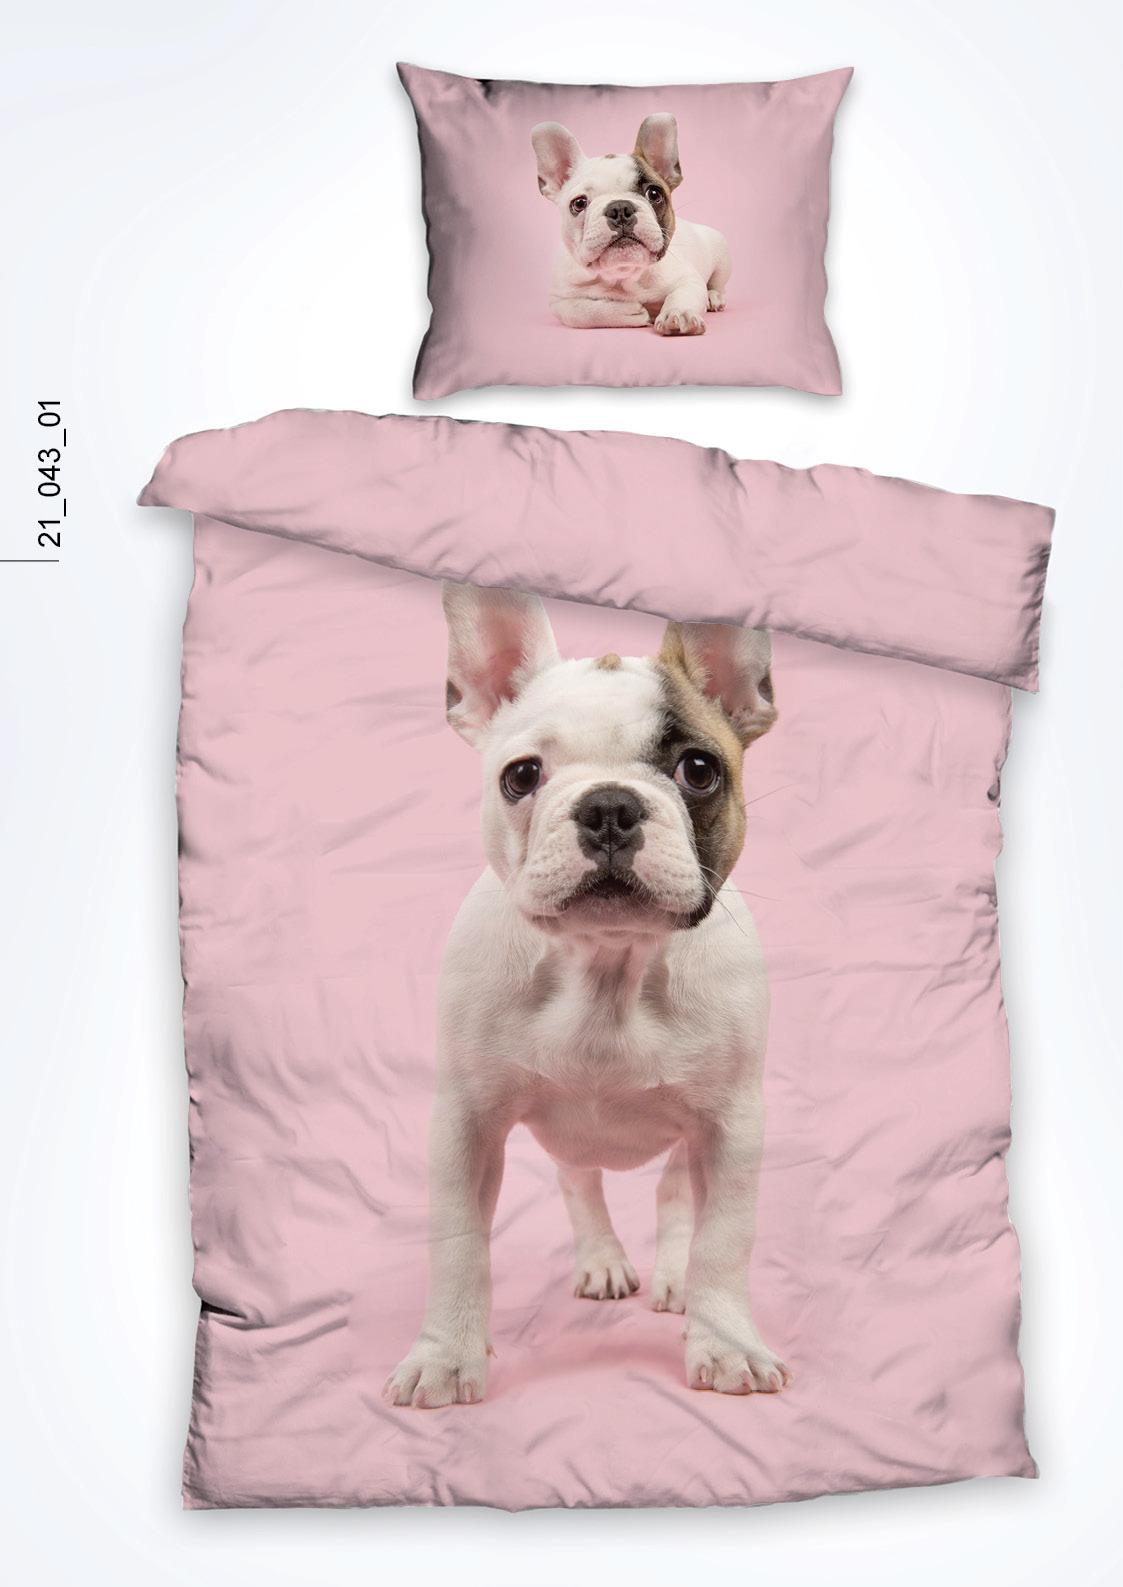 Povlečení French Bulldog, 140/200cm - růžová, Design, textil (140/200cm)